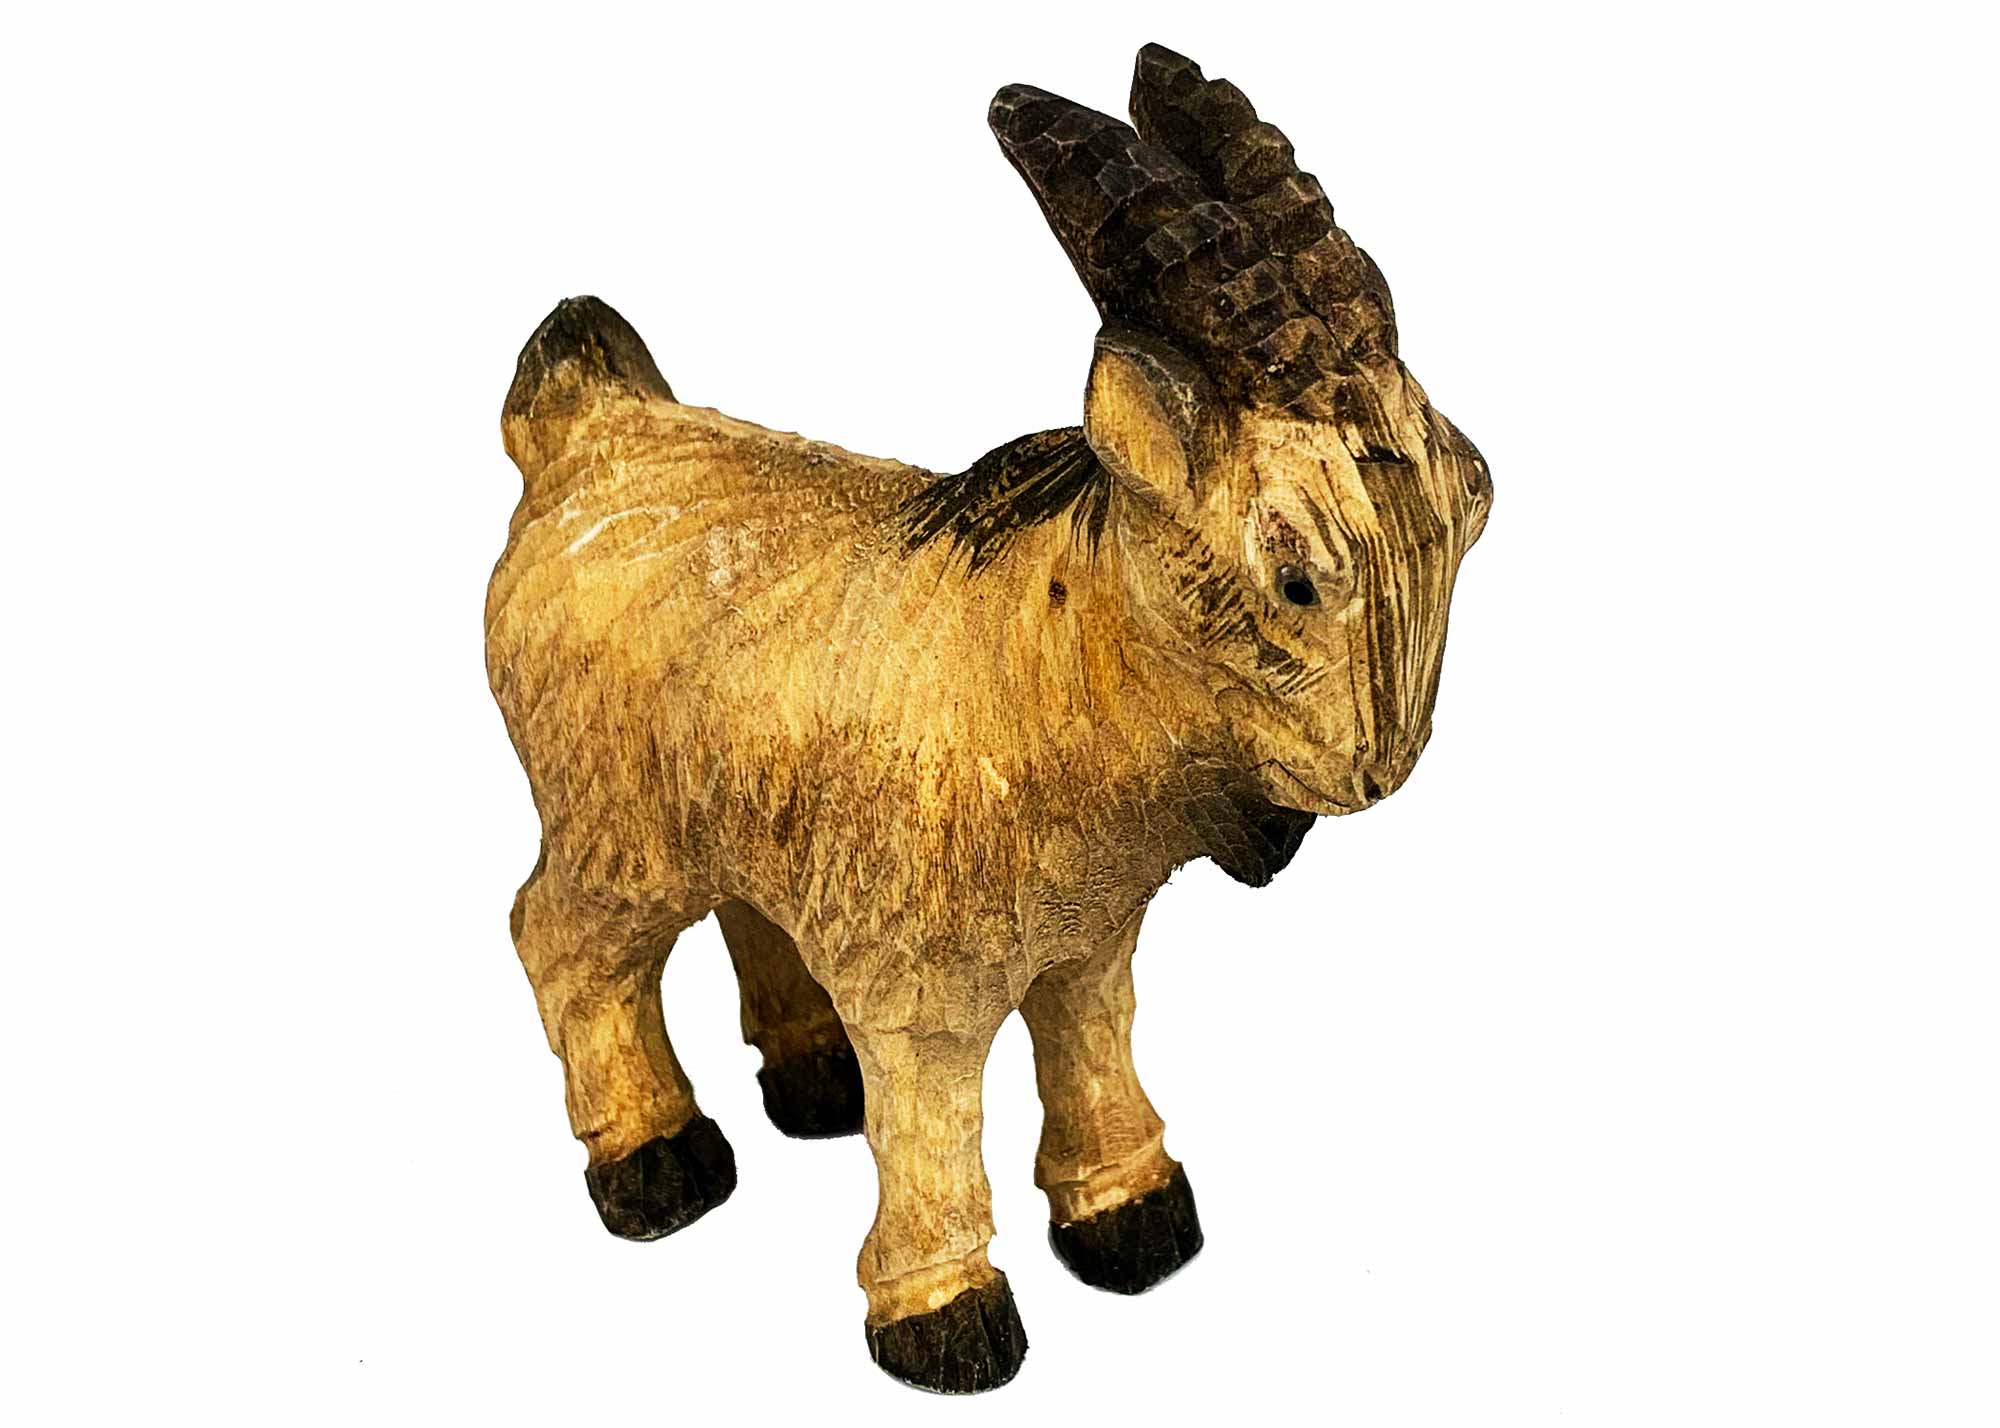 Buy Carved Goat Figurine at GoldenCockerel.com